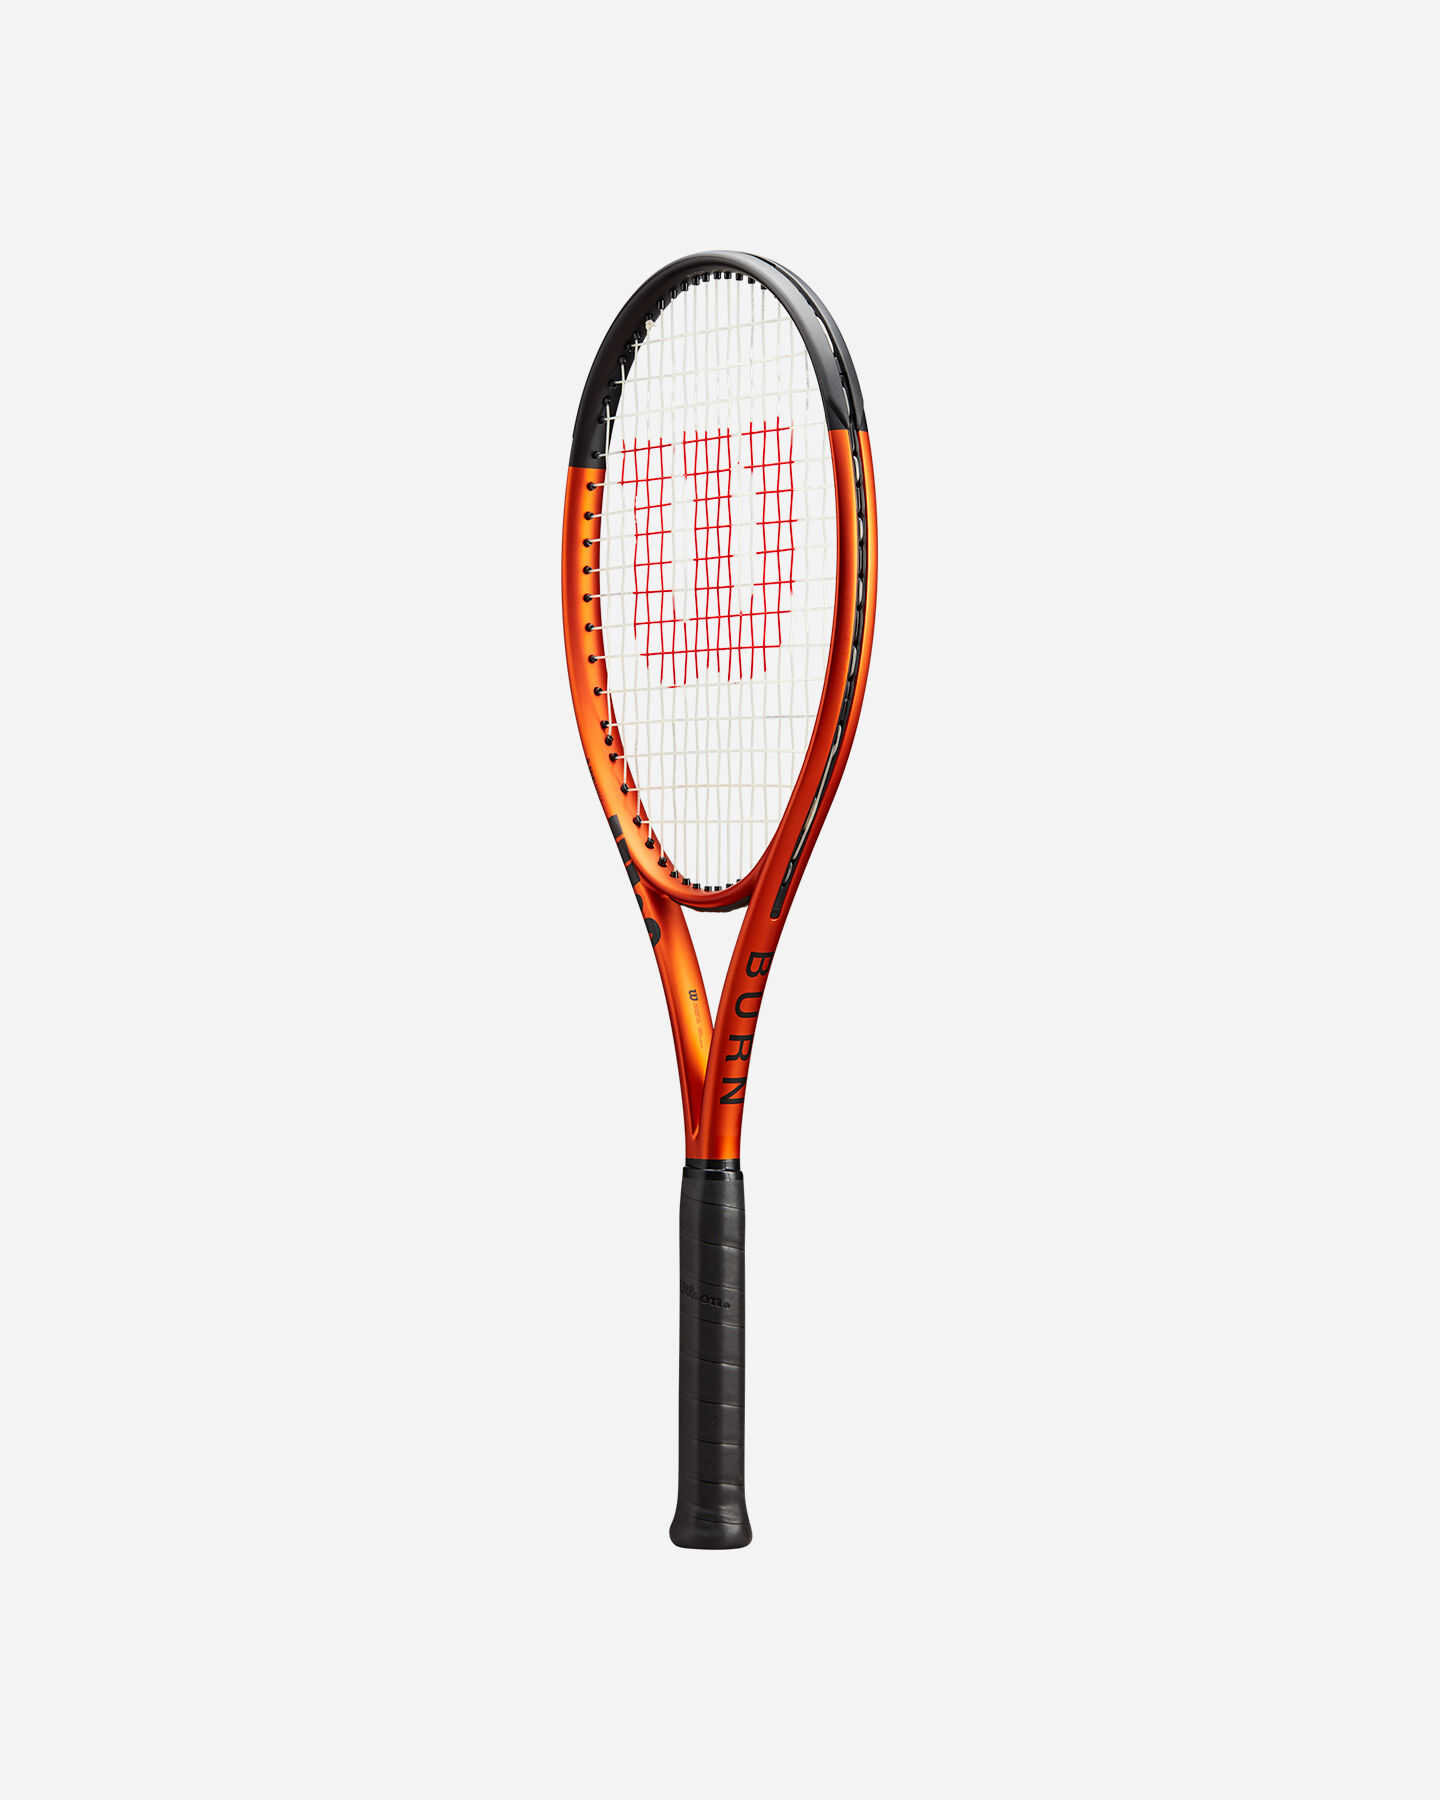  Racchetta tennis WILSON BURN 100LS V5.0 RKT  S5572696|UNI|0 scatto 2